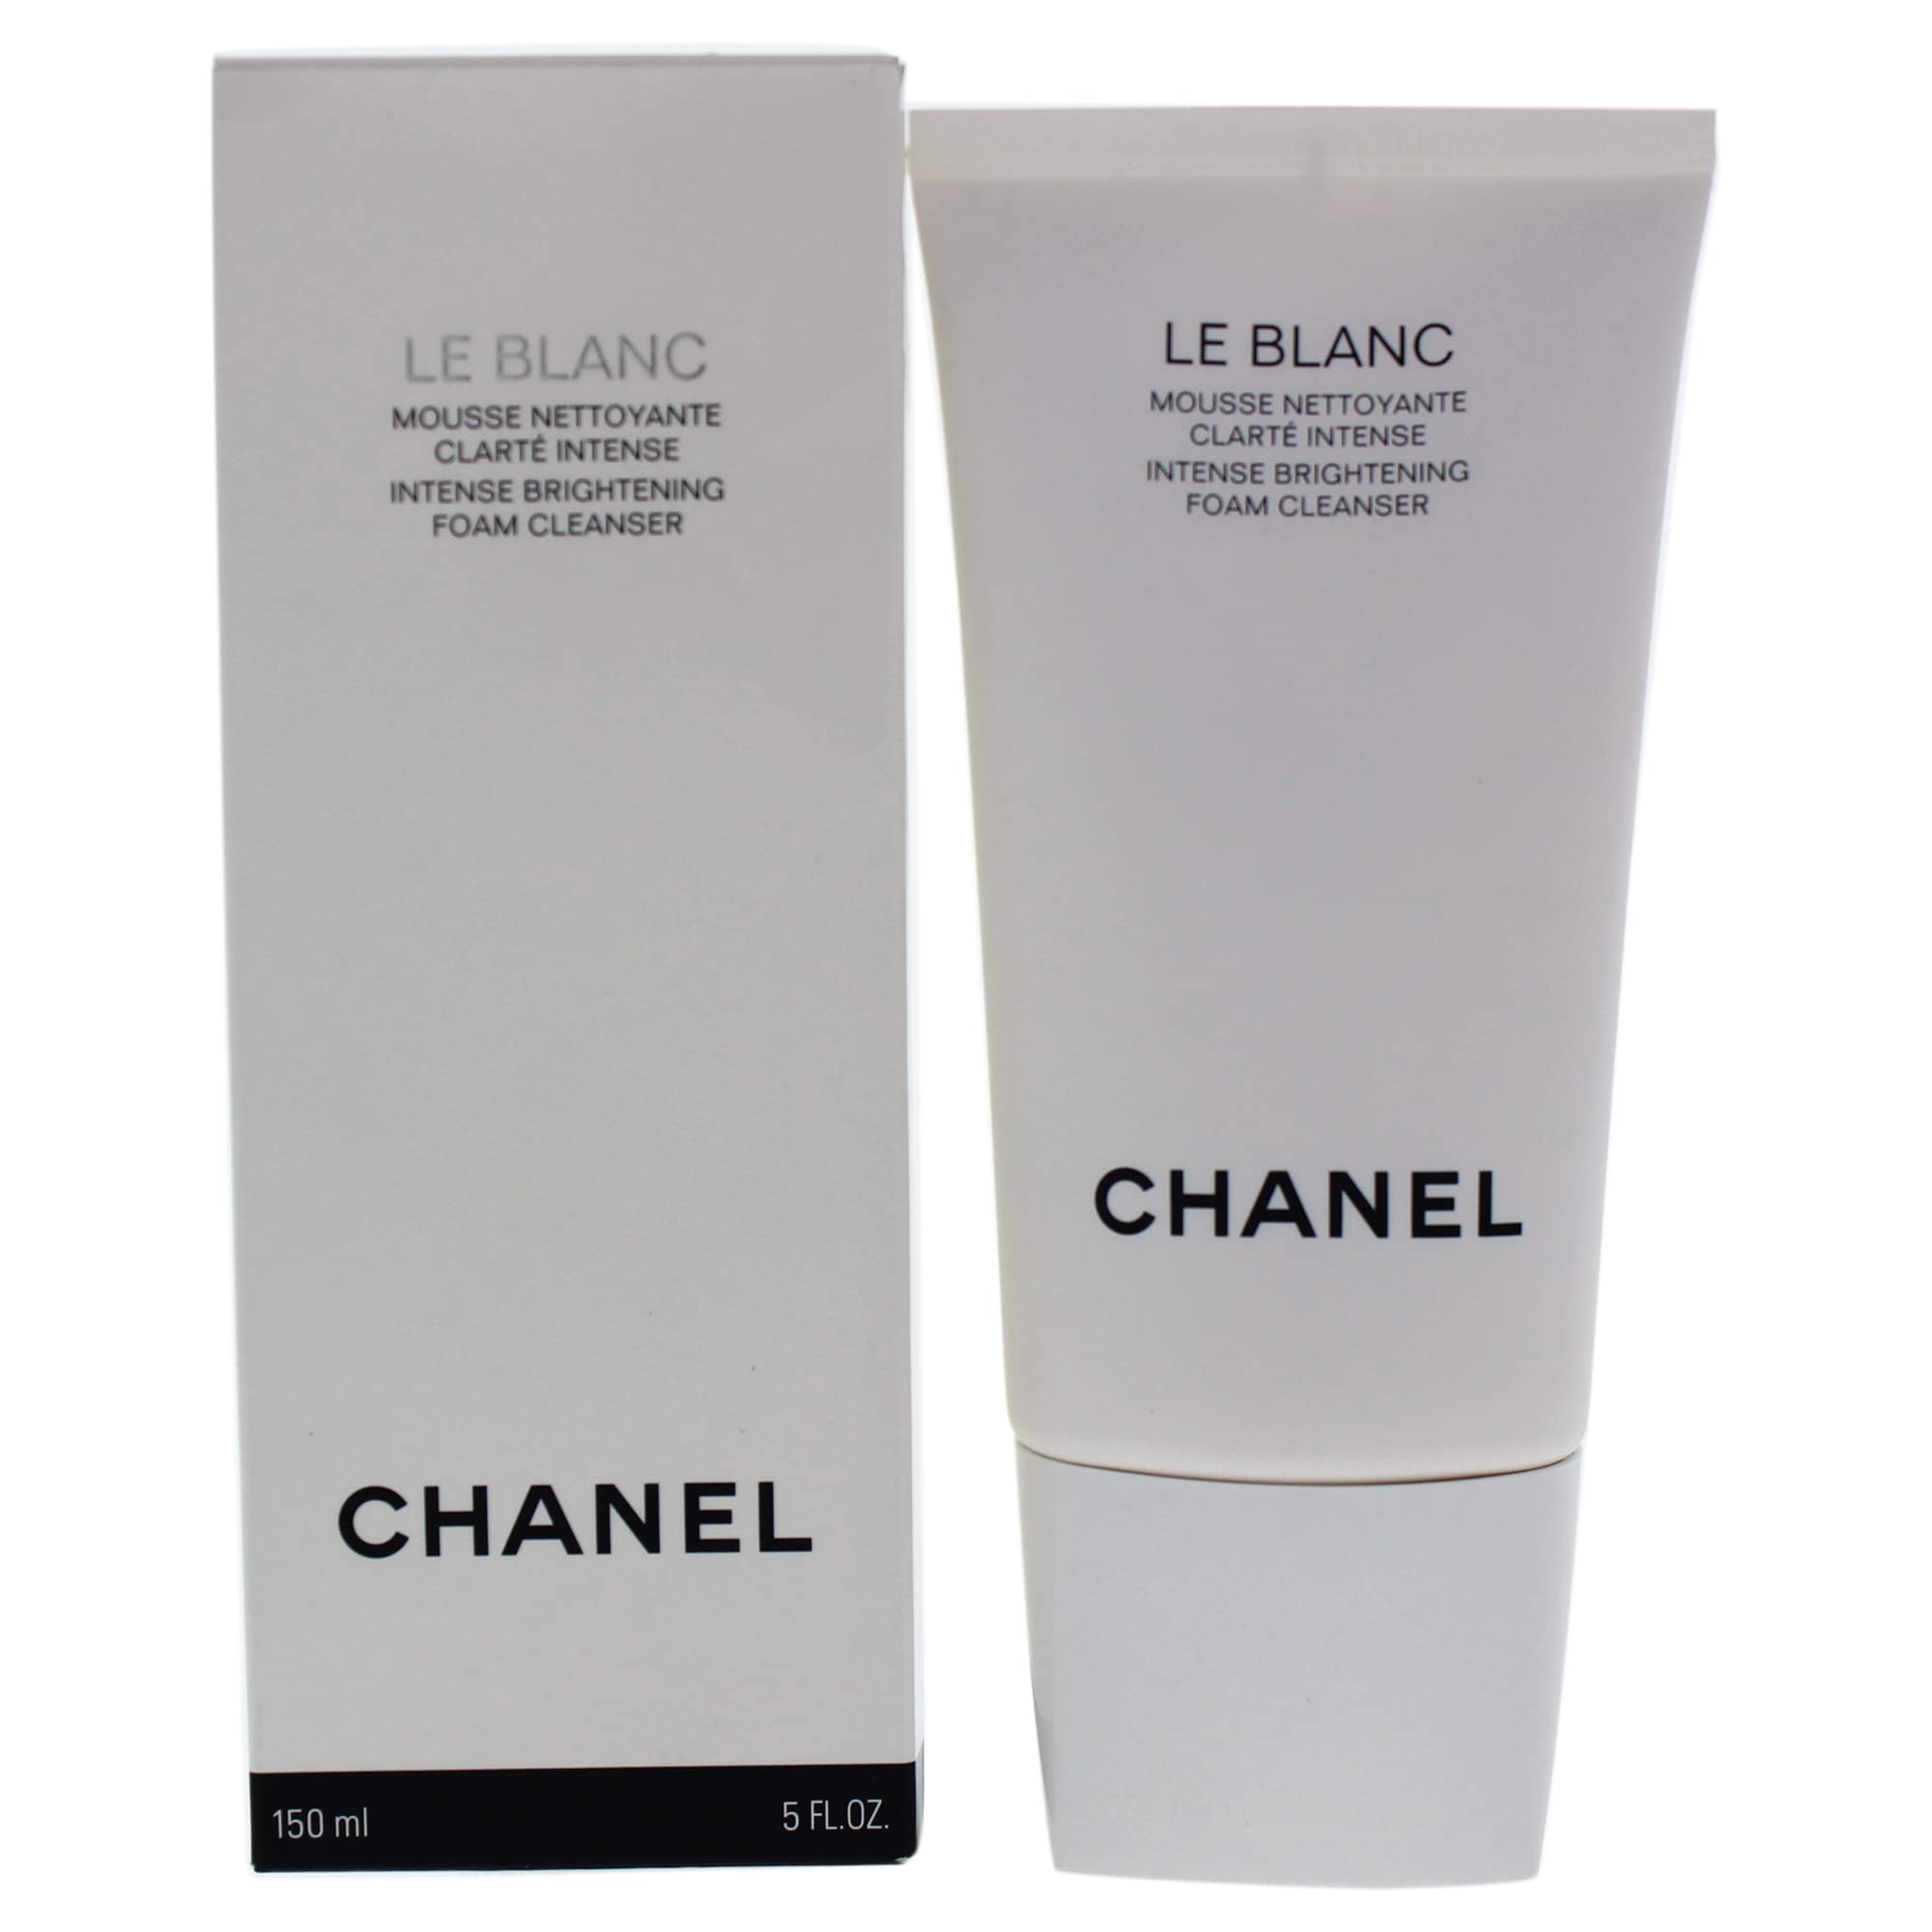 Mua Sữa Rửa Mặt Chanel Le Blanc Intense Brightening Foam Cleanser 150ml   Chanel  Mua tại Vua Hàng Hiệu h028033